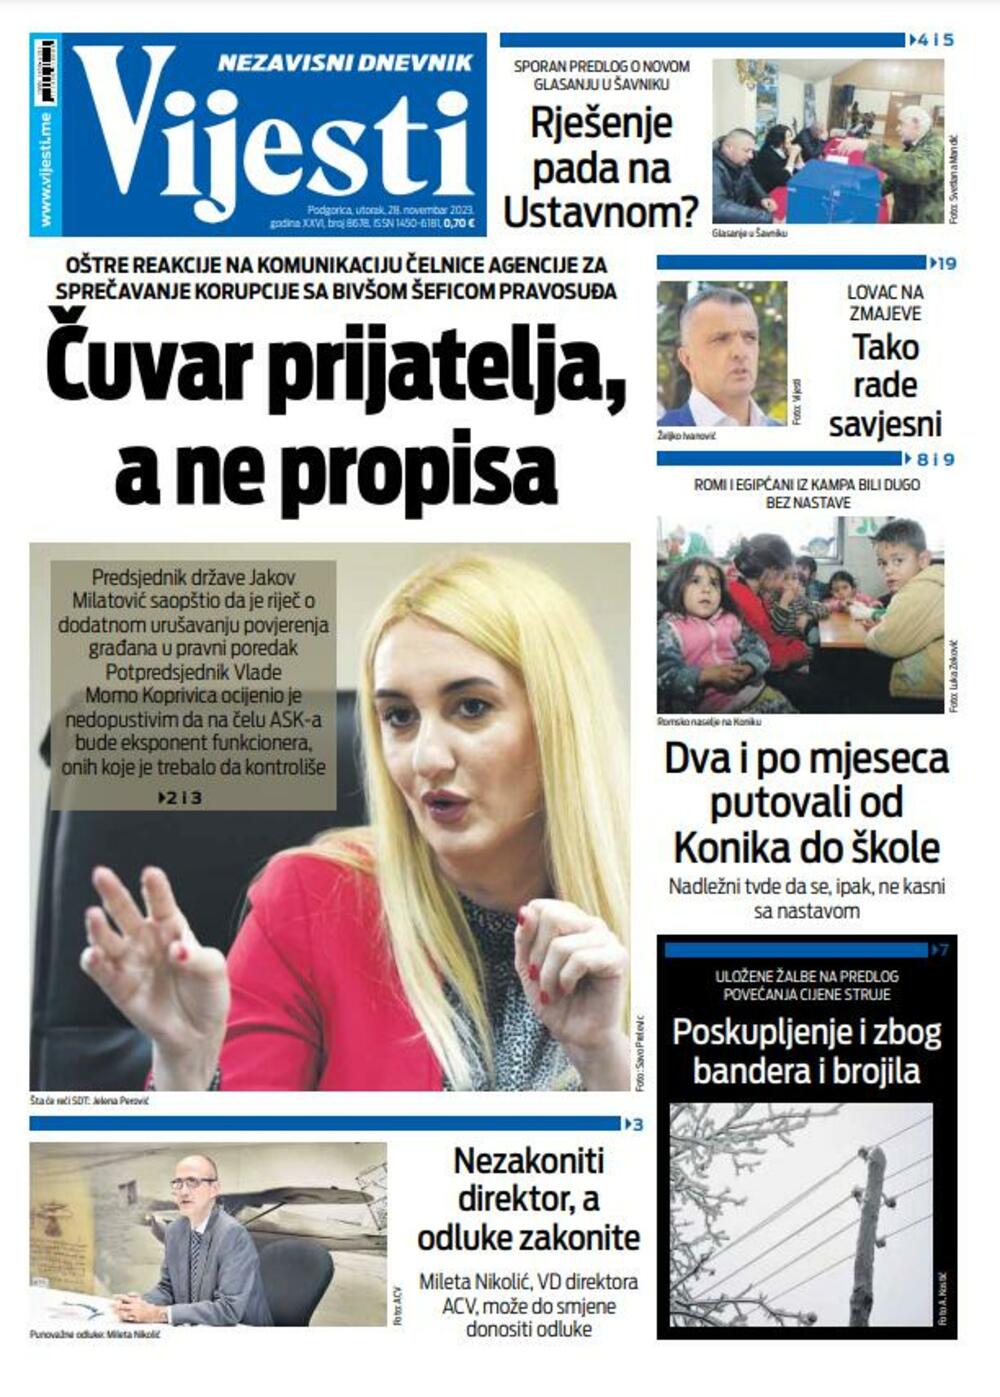 Naslovna strana "Vijesti" za 28. novembar 2023., Foto: Vijesti